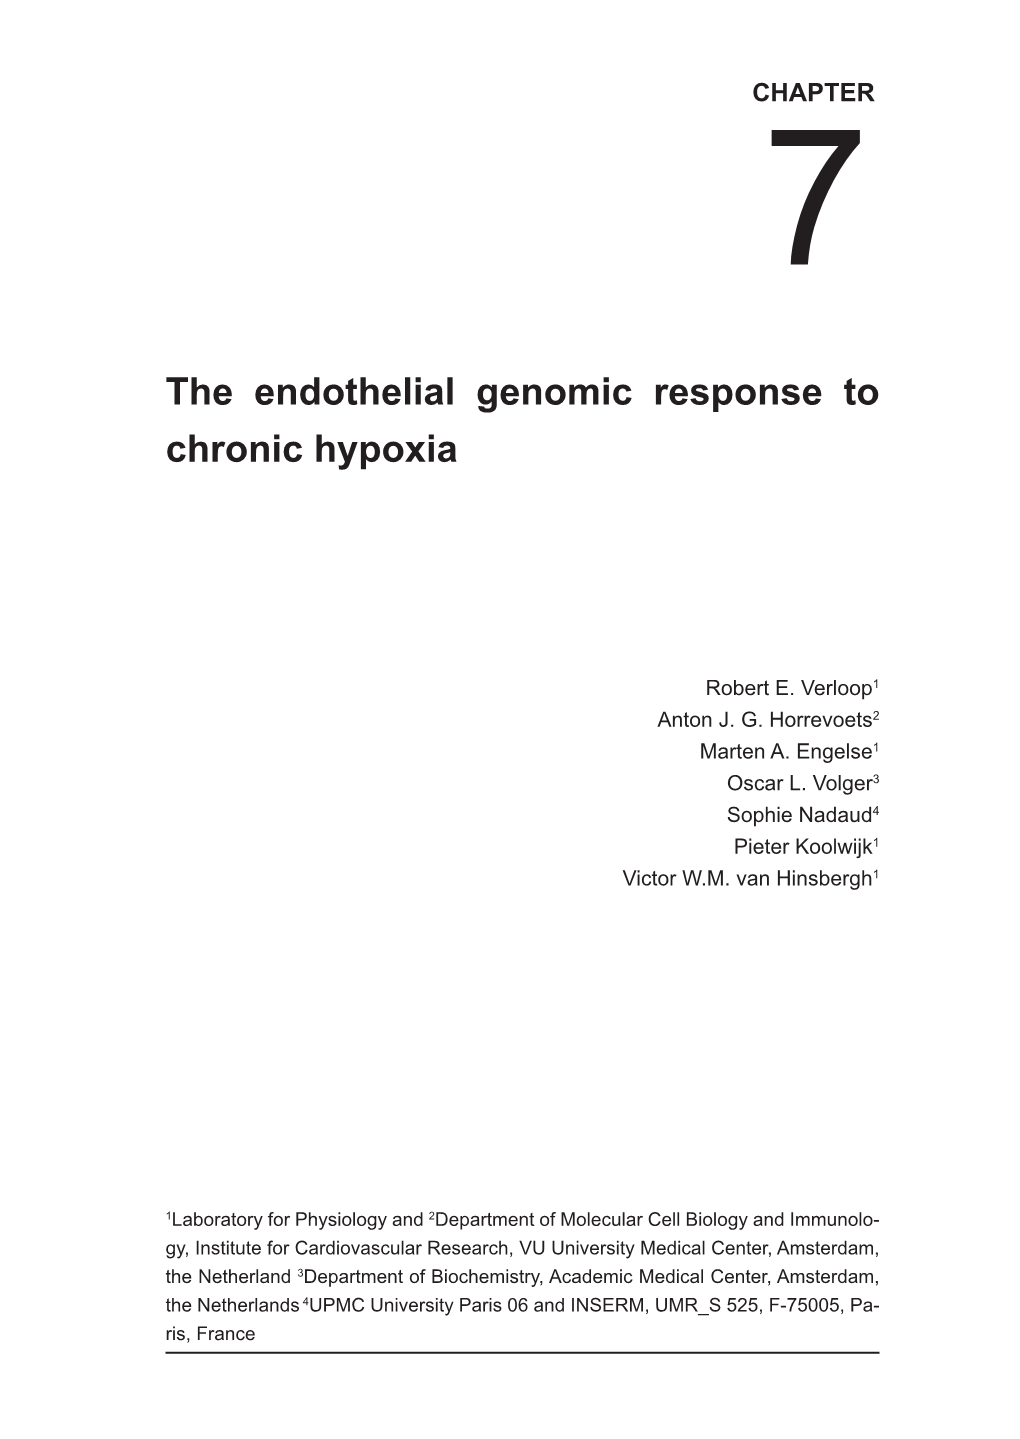 The Endothelial Genomic Response to Chronic Hypoxia